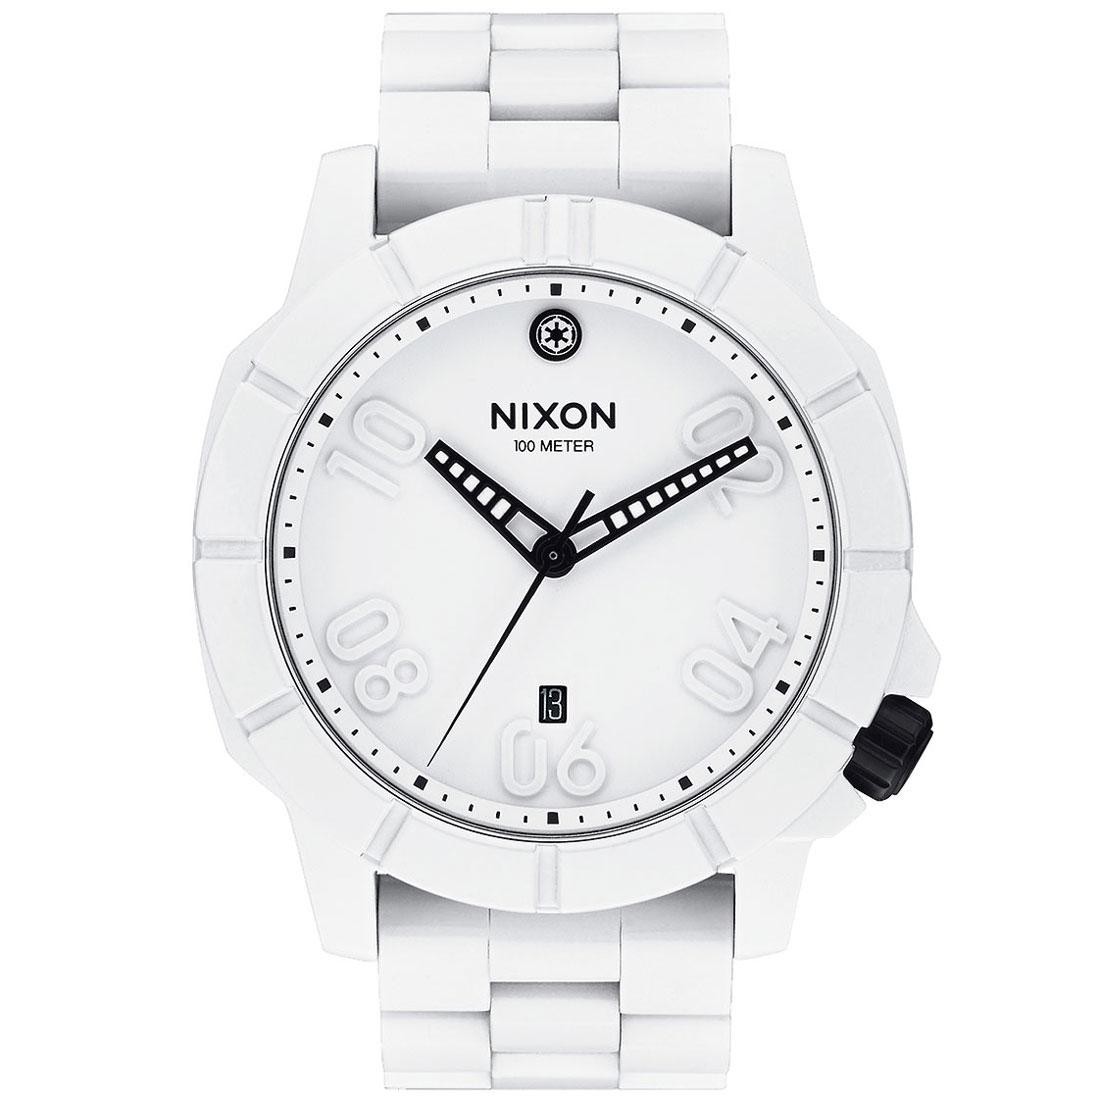 Nixon Ranger Star Wars Stormtrooper Watch (white)